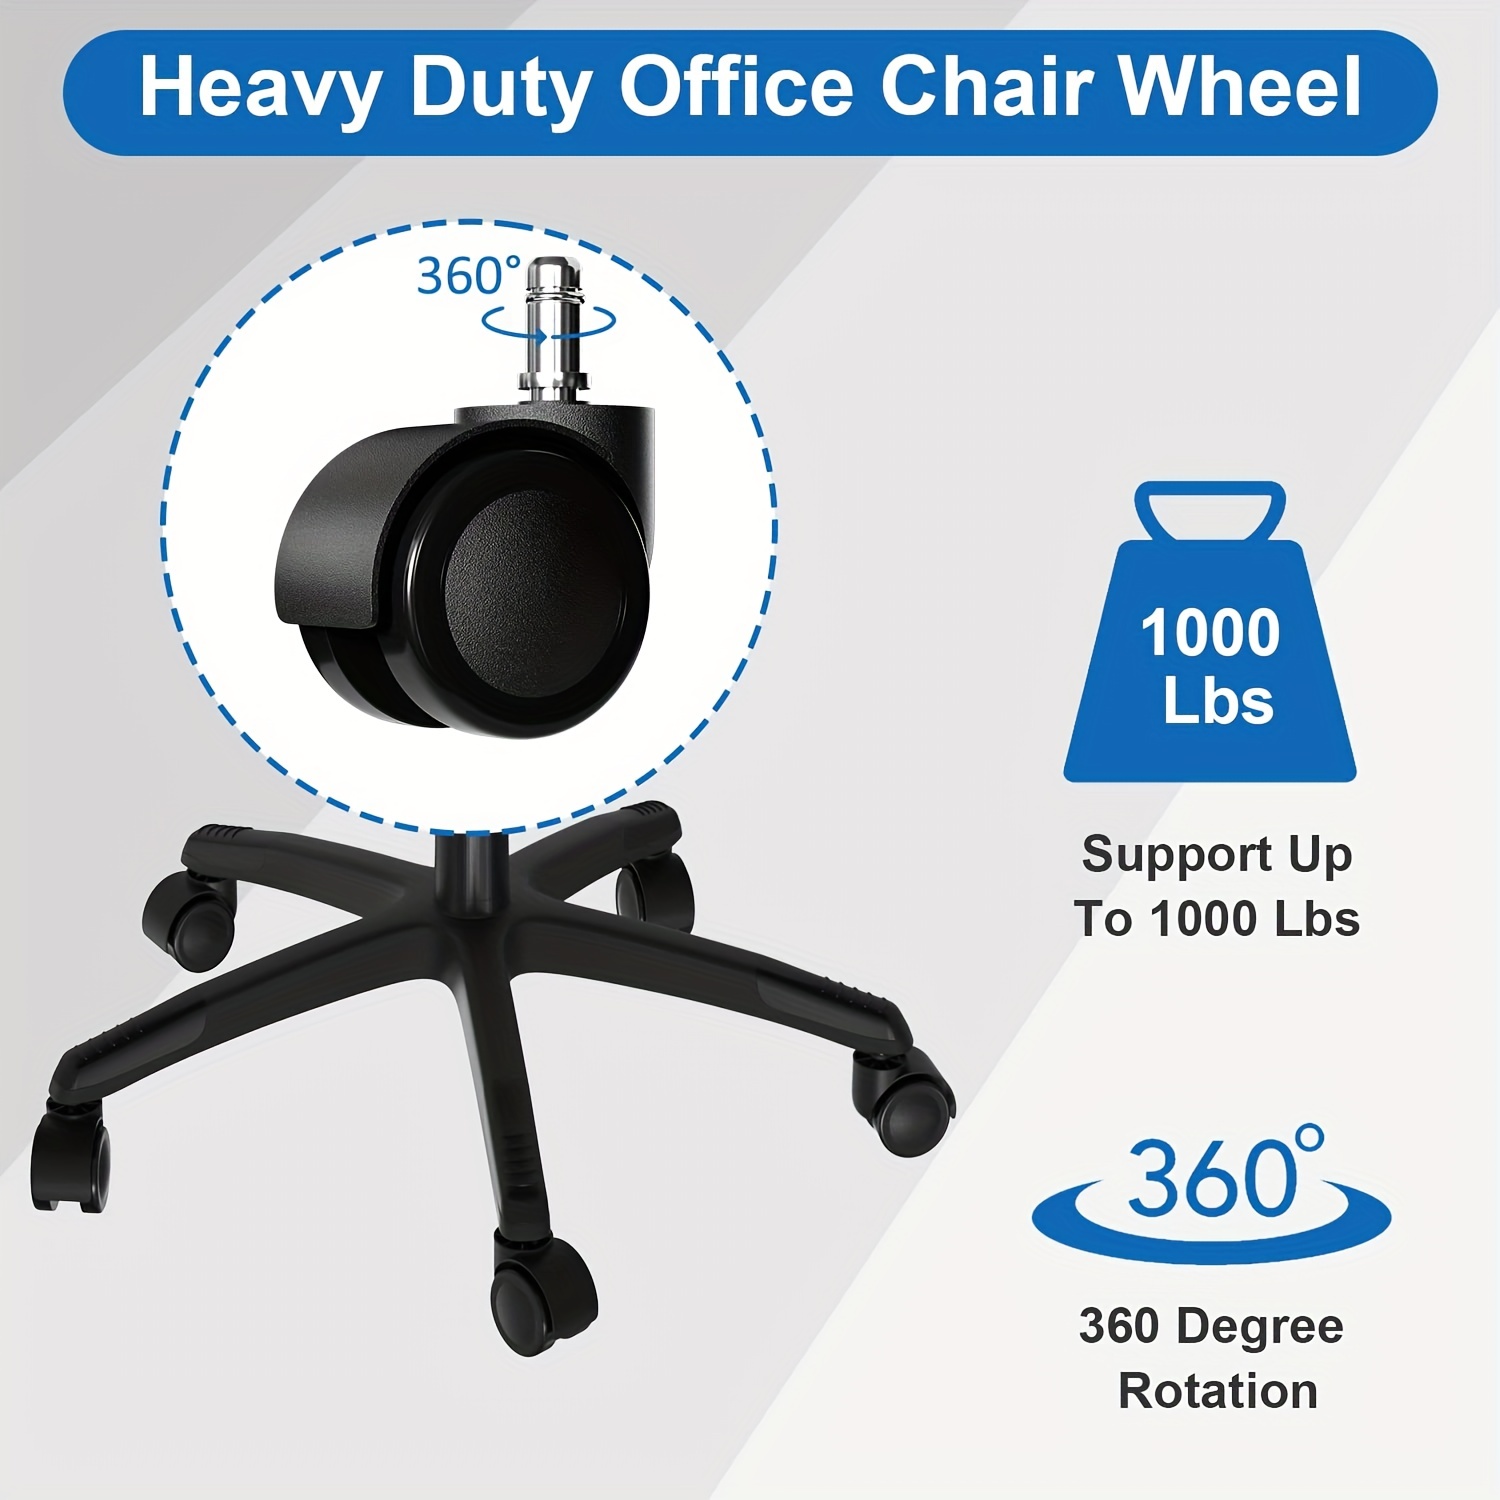 Ruedas de goma de repuesto para sillas de oficina, para suelos de madera  dura y alfombras, ruedas resistentes para sillas de oficina para reemplazar